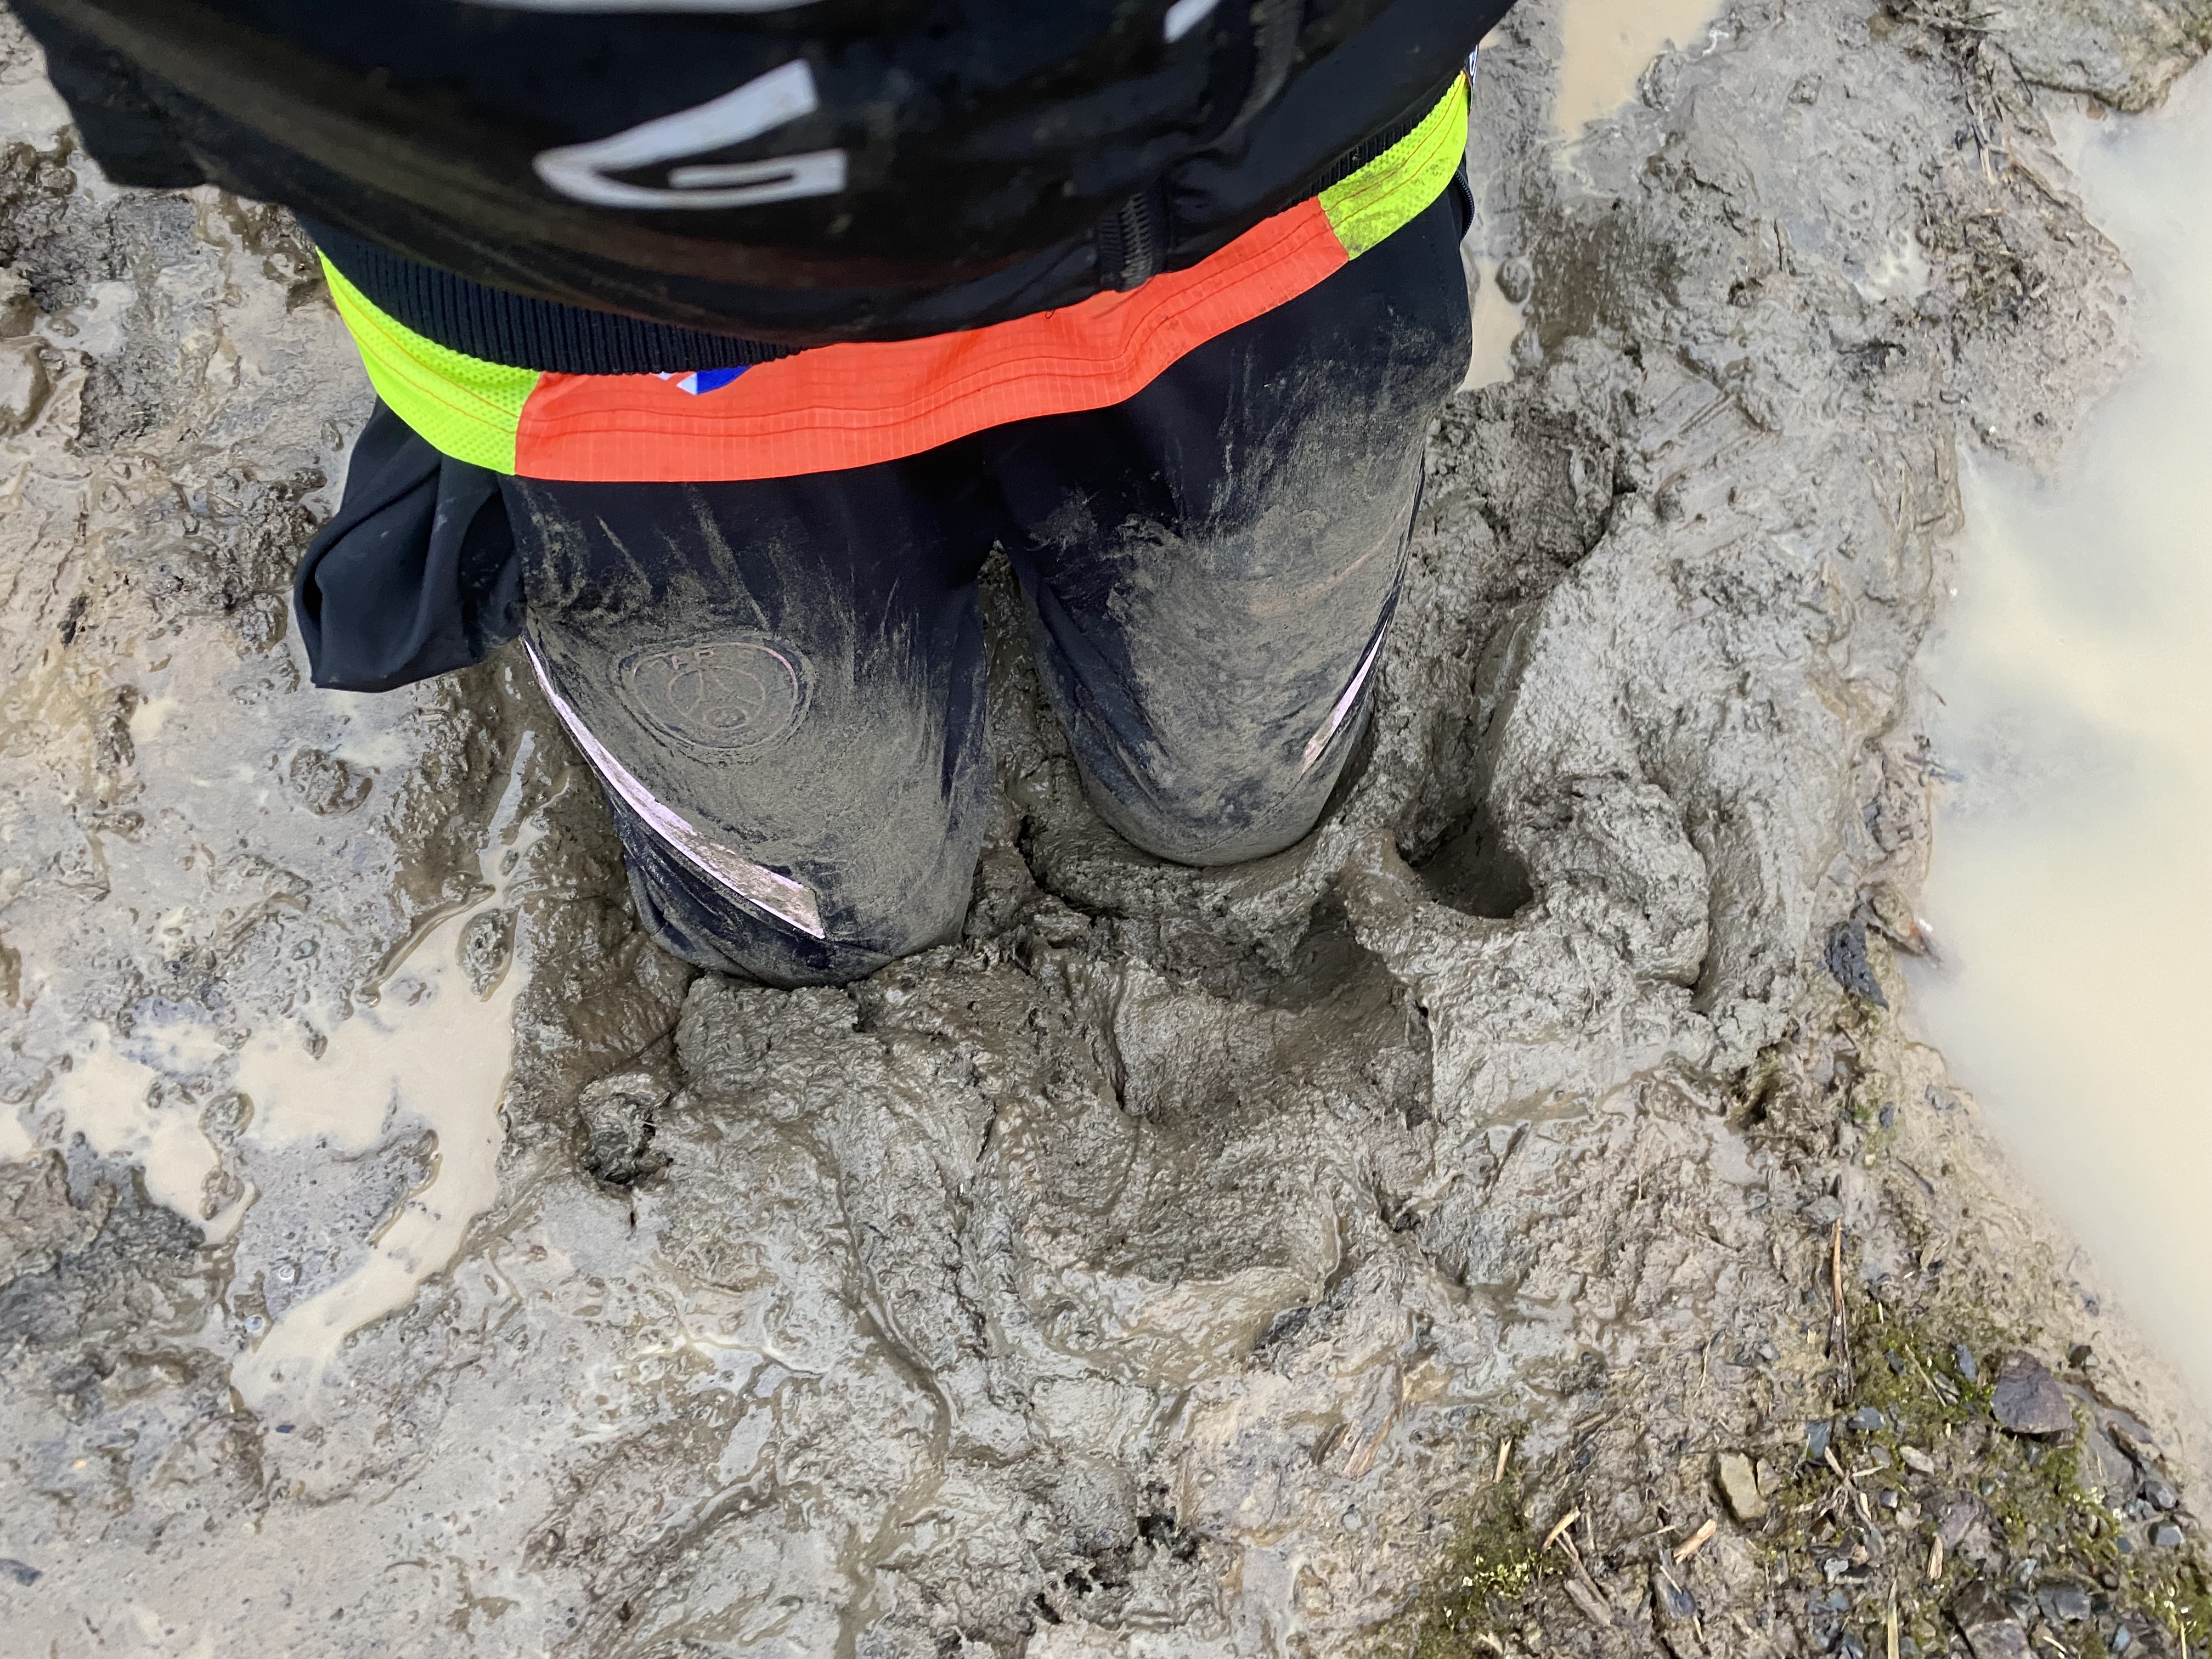 Rainy Saturday pt. 1 - getting Muddy